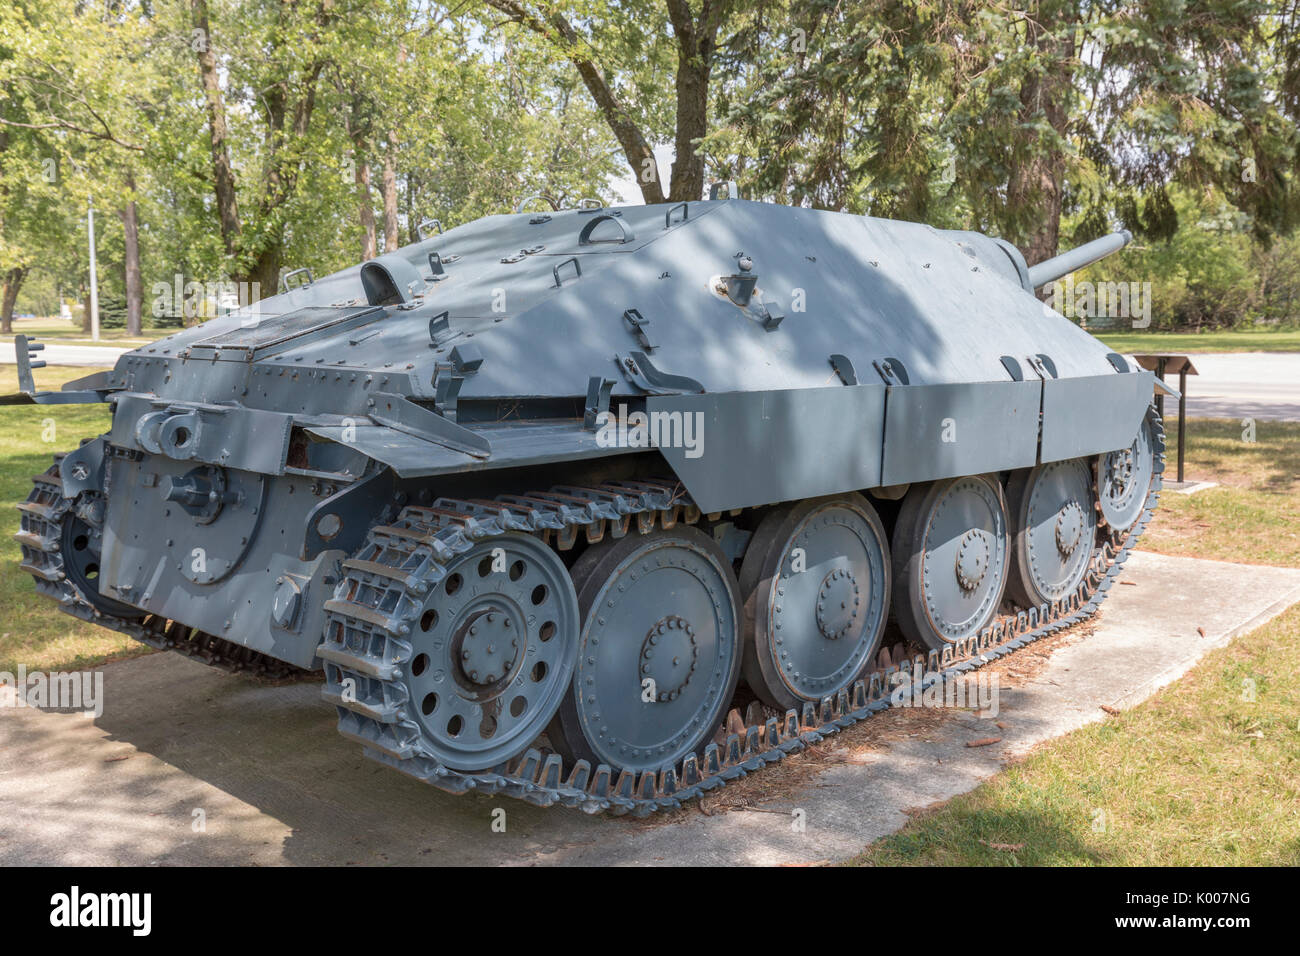 Deutsche Jagdpanzer 38 (t Stockfotografie - Alamy